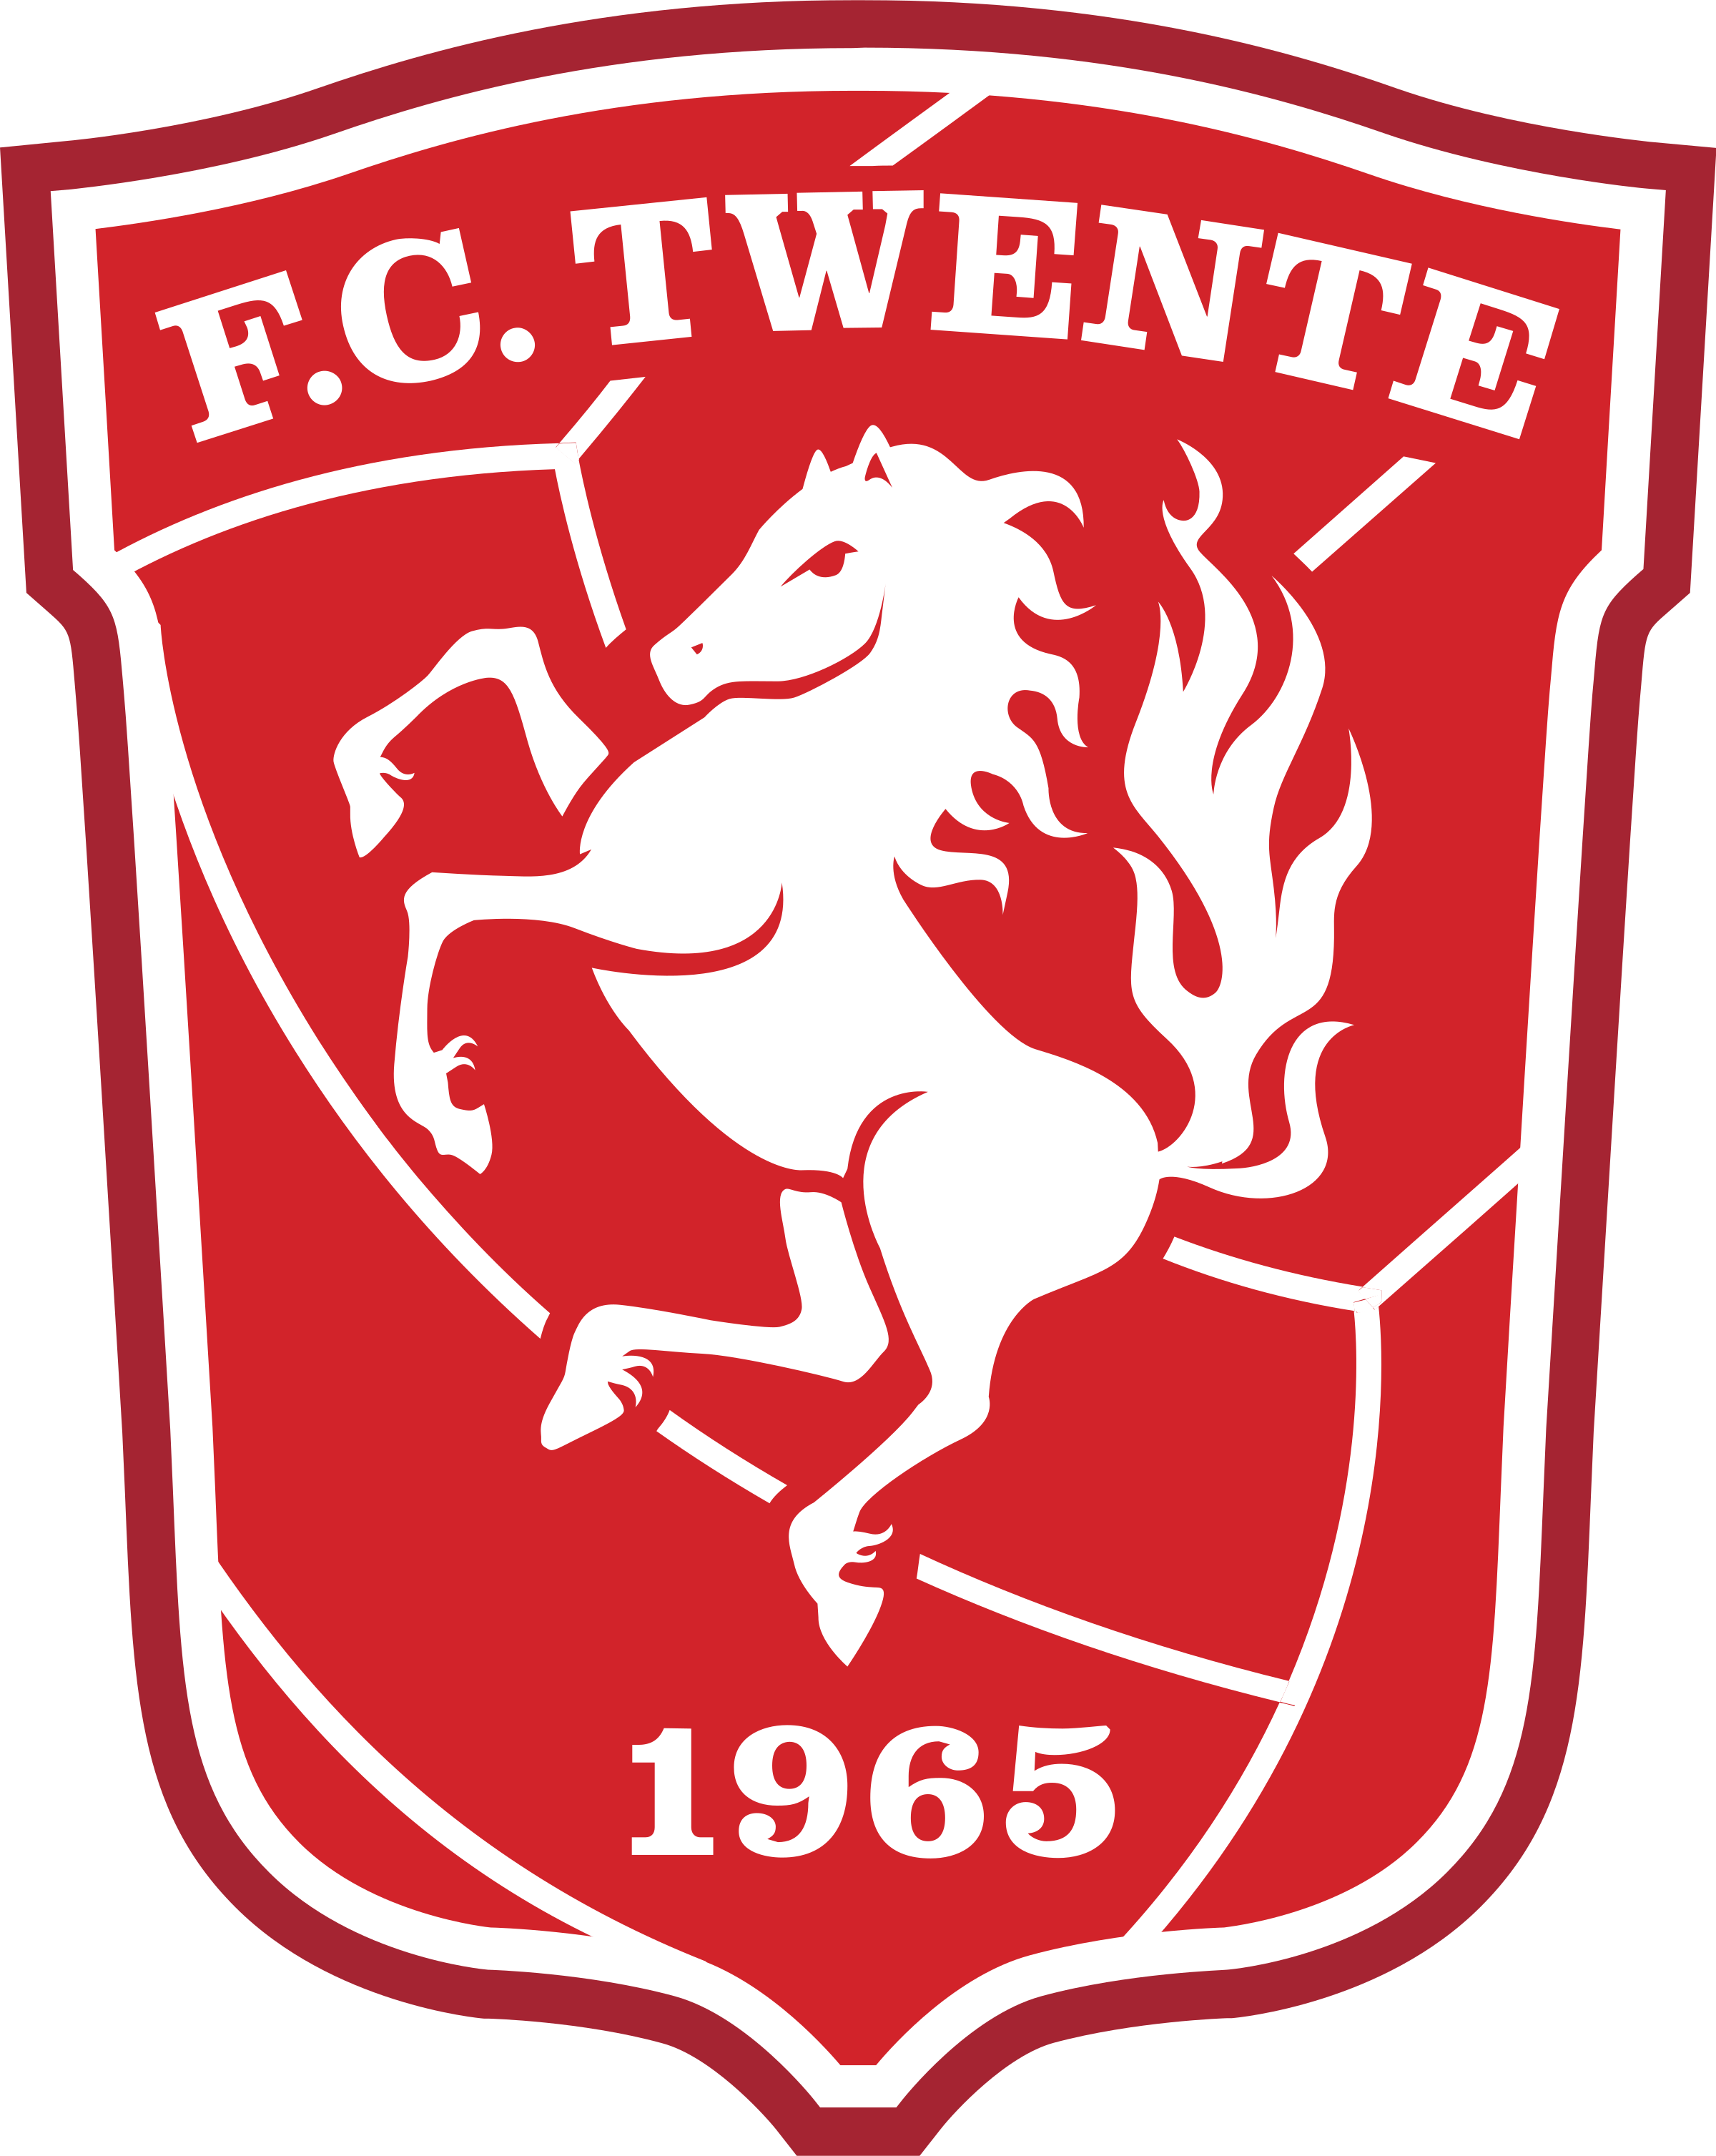 Twente Camiseta | Camiseta Twente replica 2021 2022